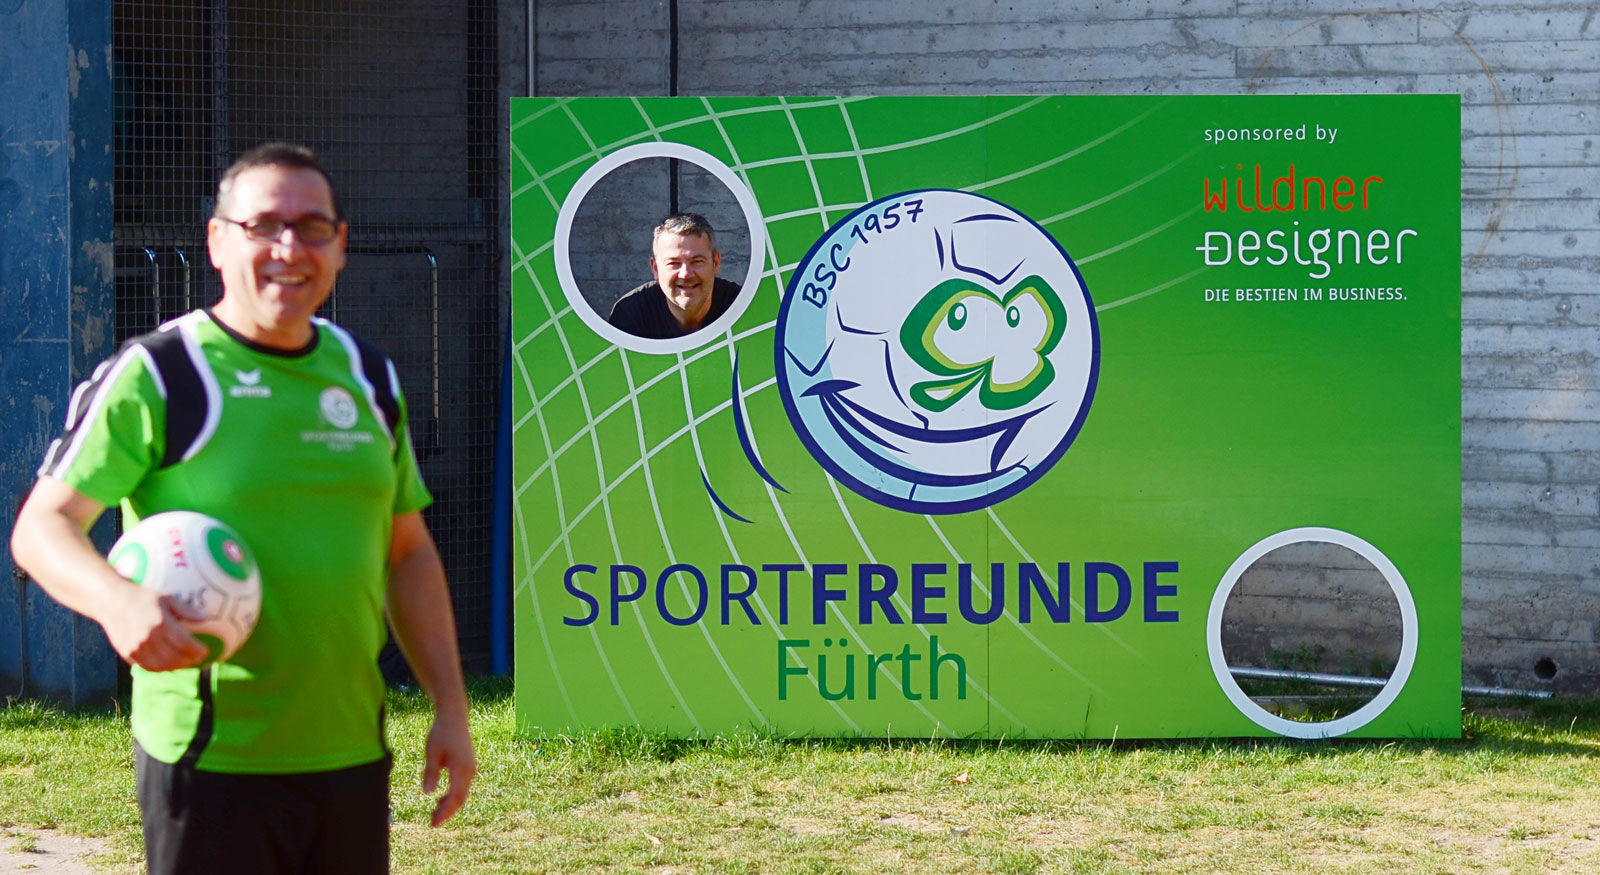 Sponsoring der neuen Torwand der Sportfreunde Fürth